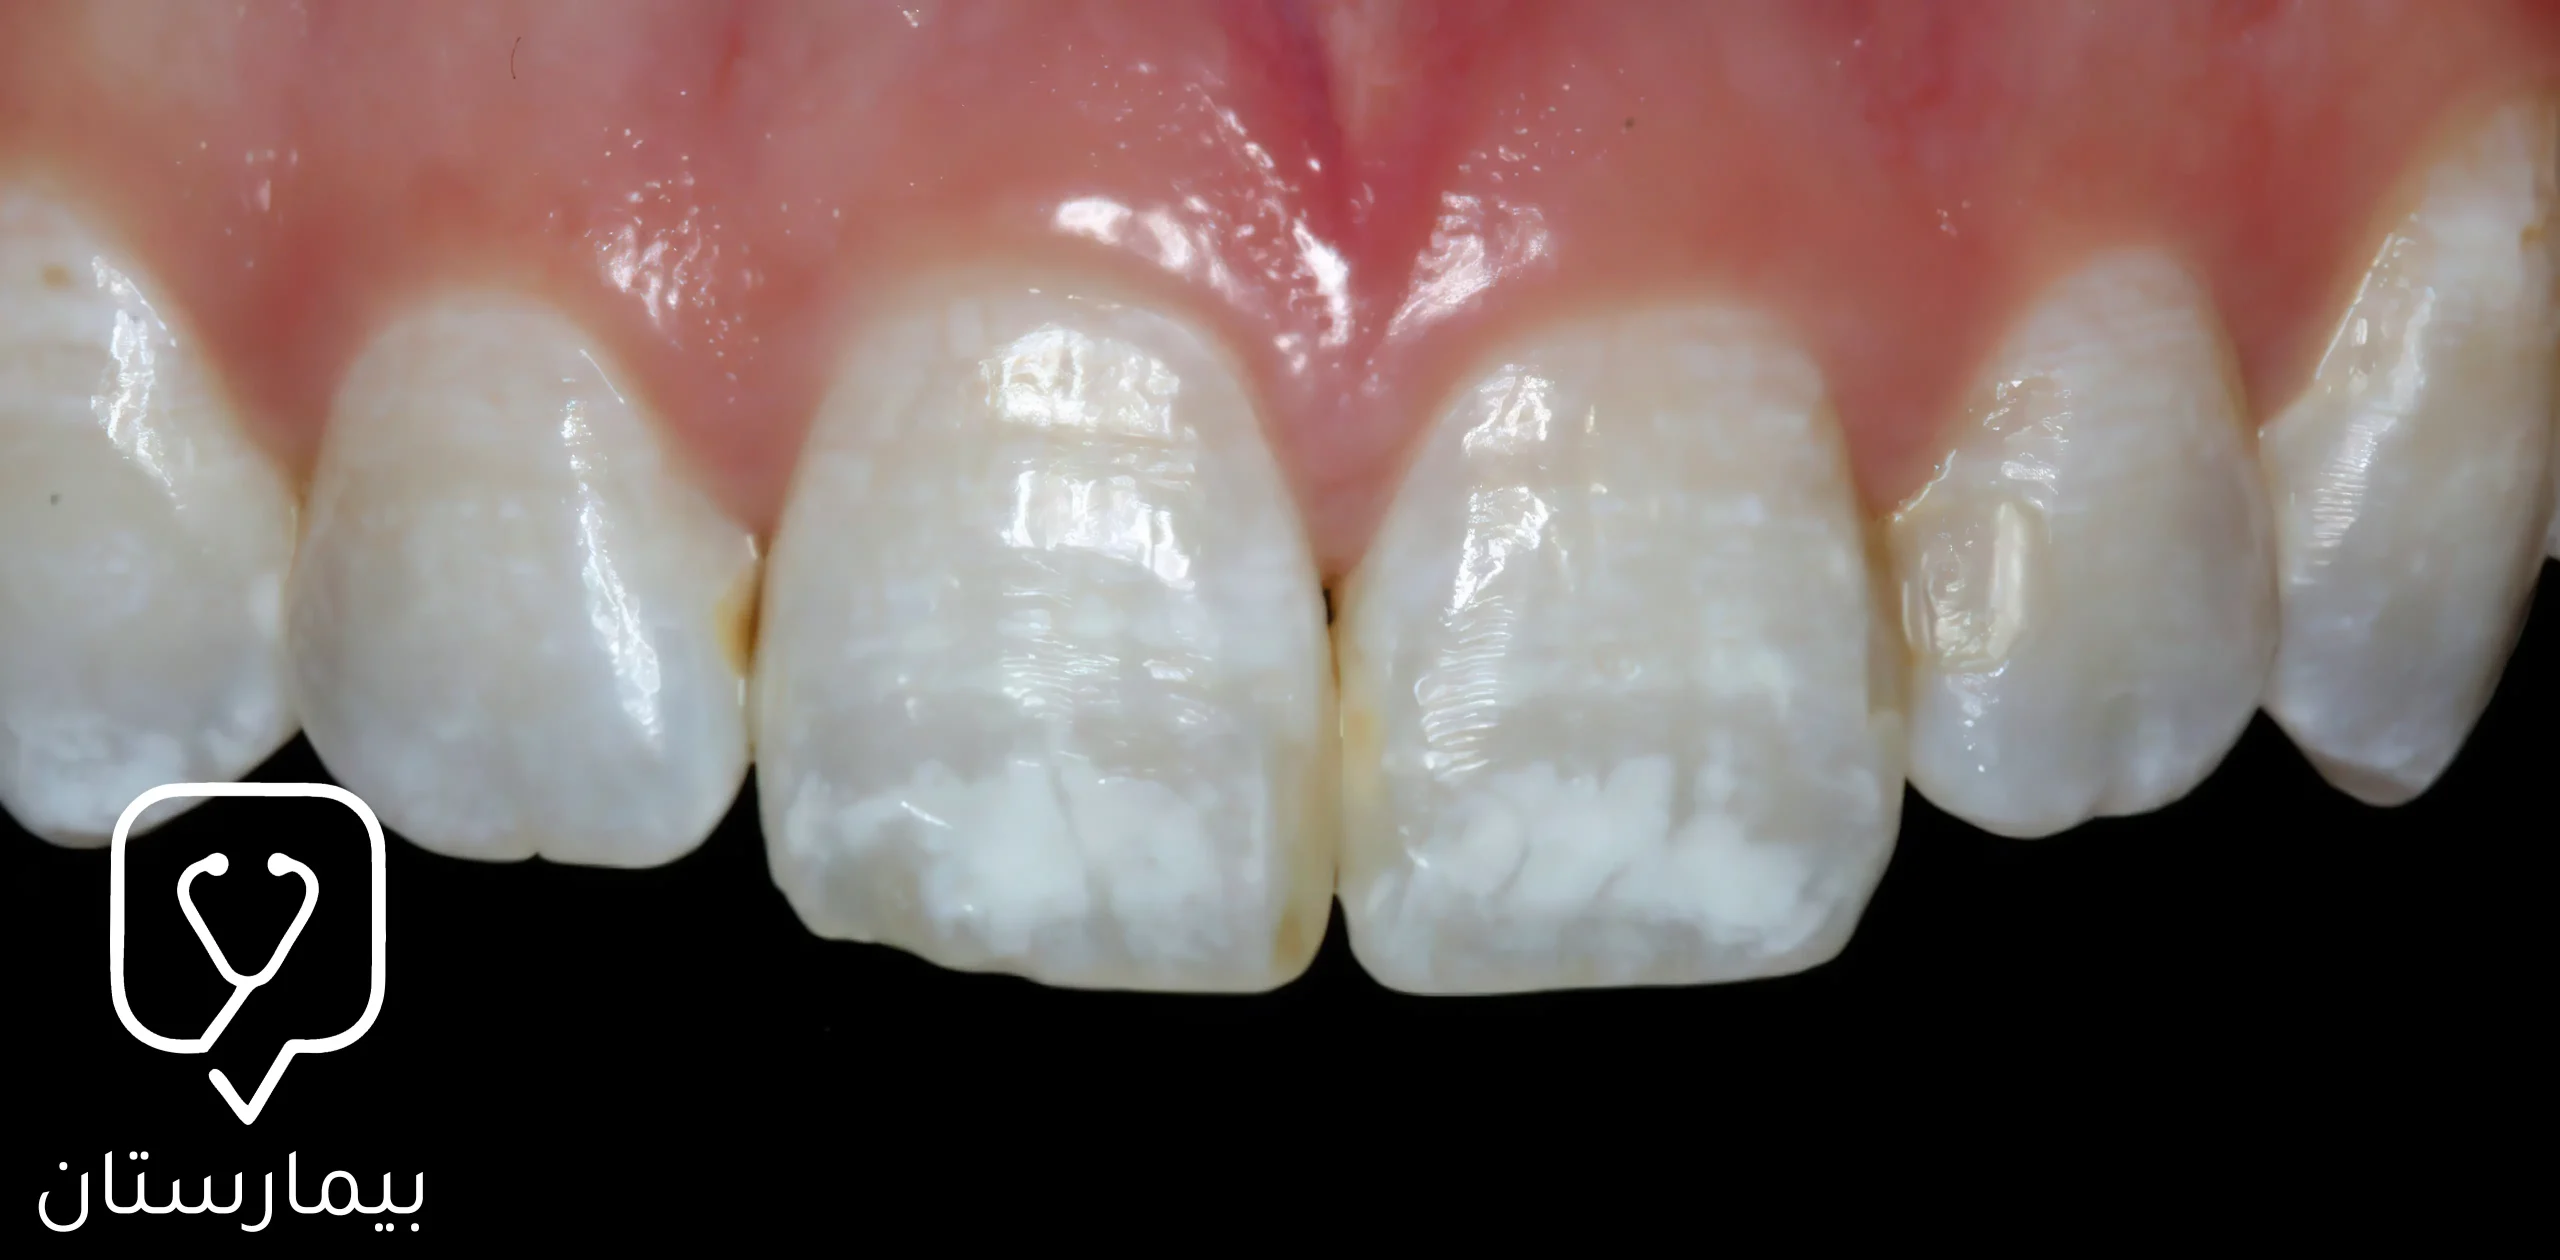 إن الإفراط في تناول الفلورايد واستخدامه الخاطئ قد يسبب الإصابة بتصبغات بيضاء تدعى بتسمم الأسنان الفلوري